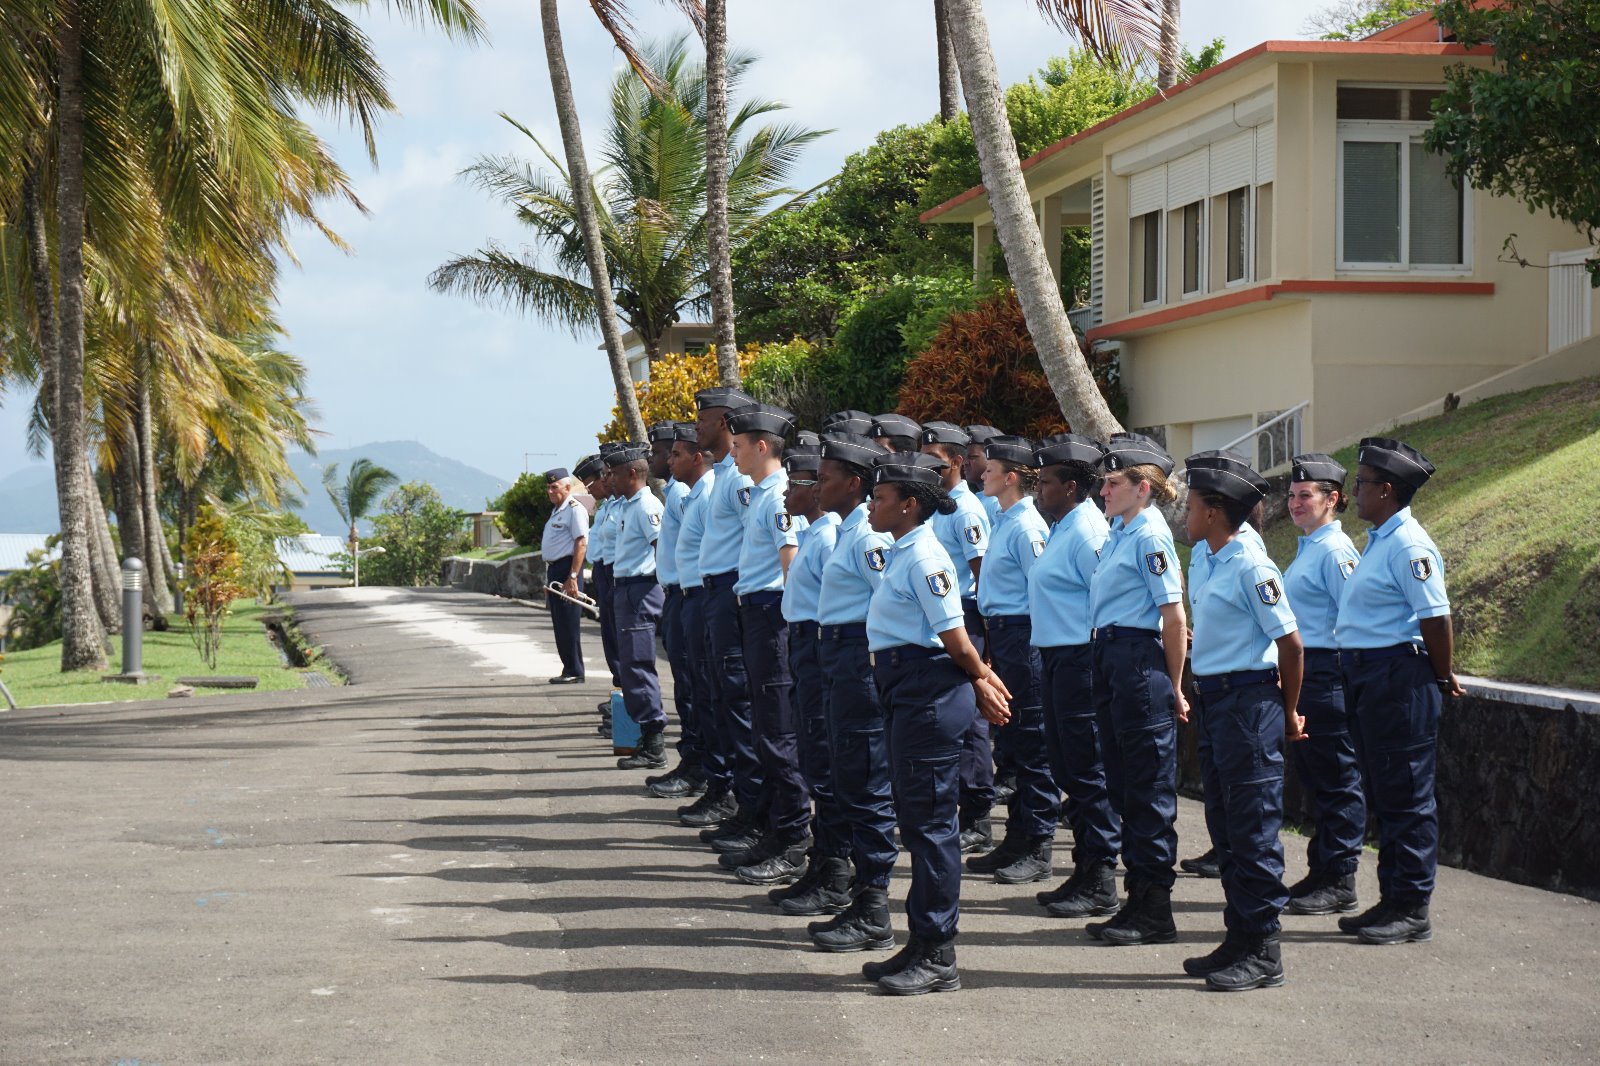     21 jeunes intègrent la réserve de la gendarmerie

